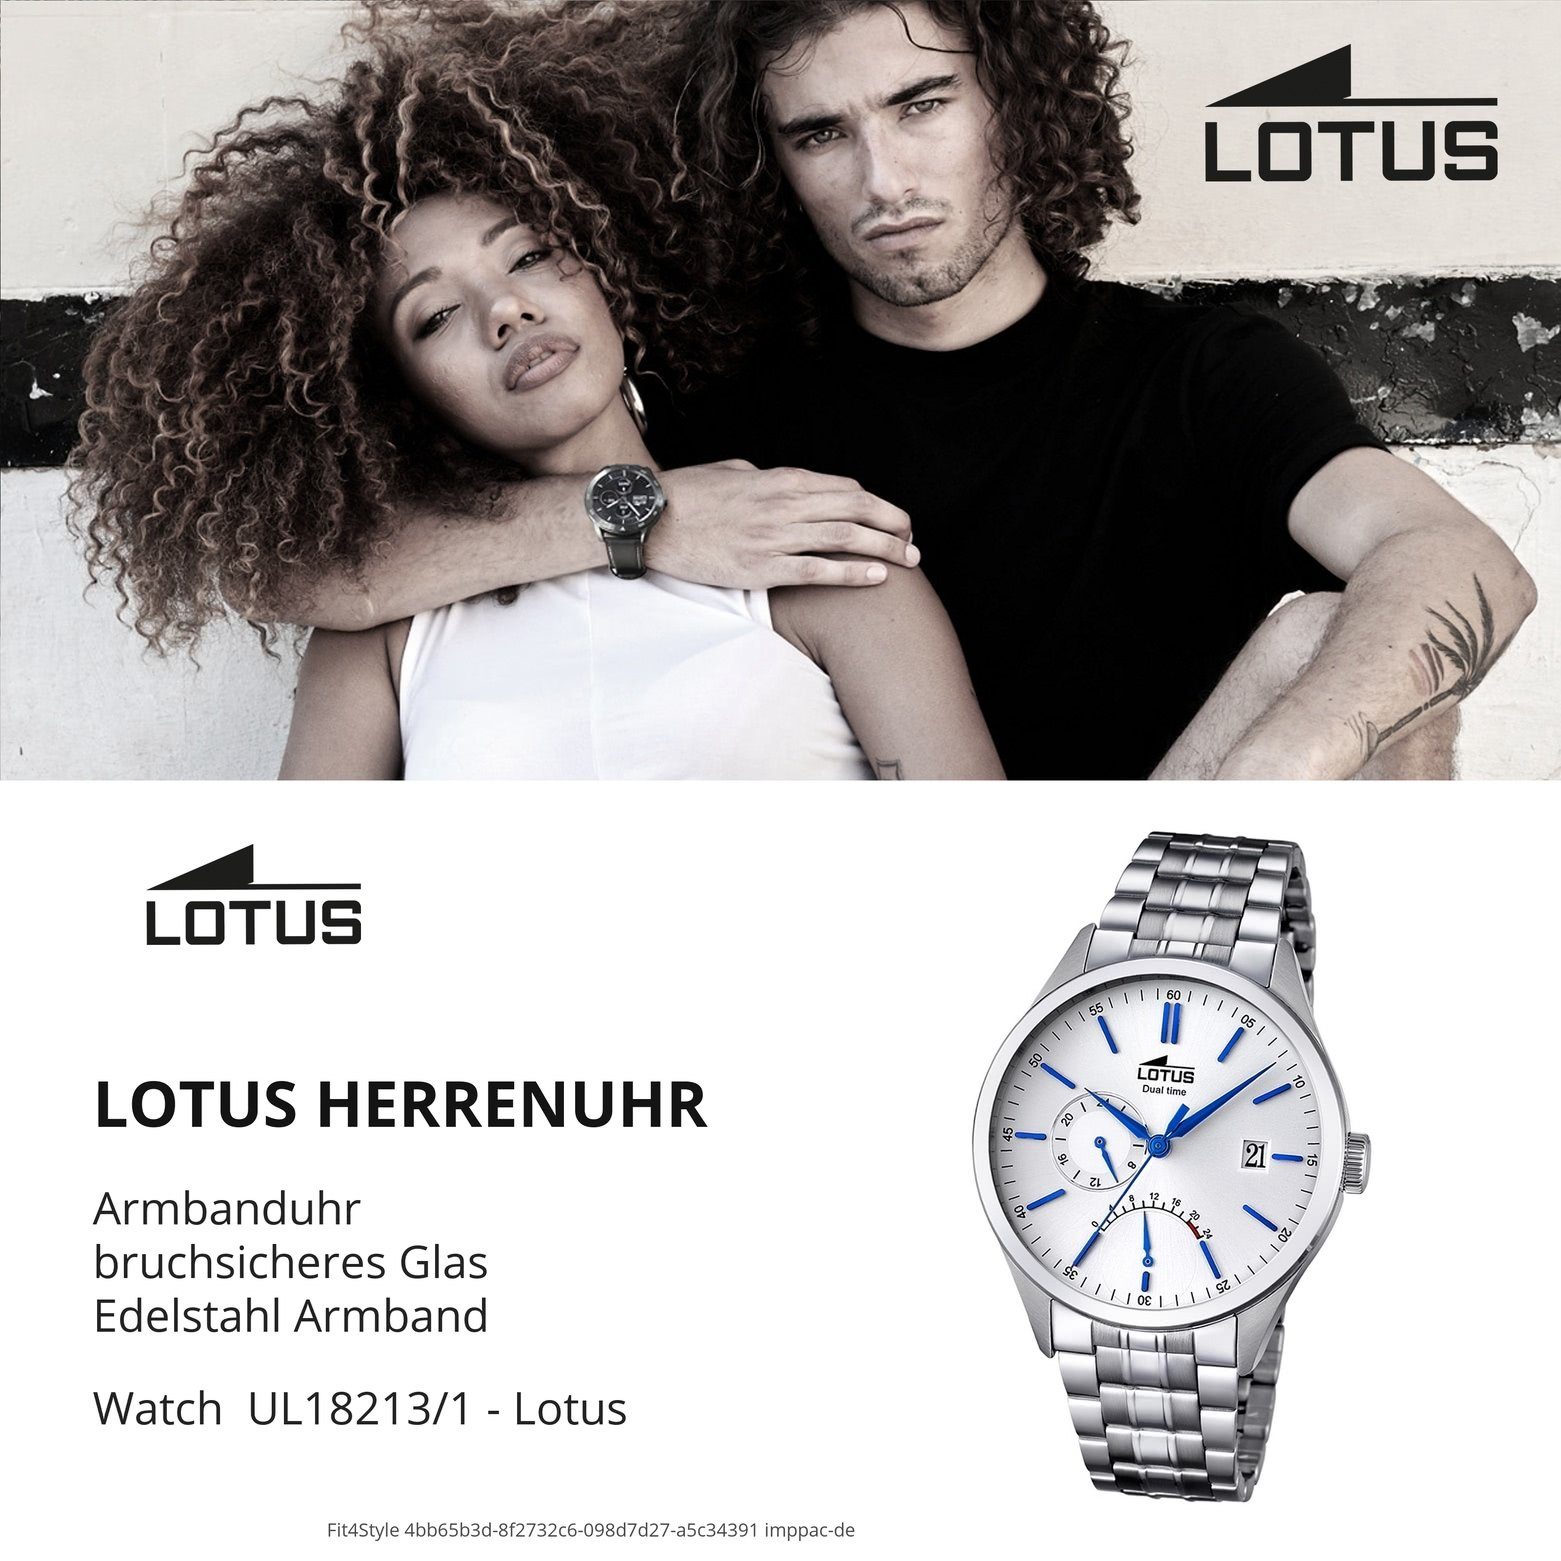 Herren silber 42mm), Edelstahlarmband (ca. Lotus Herren Uhr Elegant rund, Multifunktionsuhr L18213/1, groß Armbanduhr Lotus